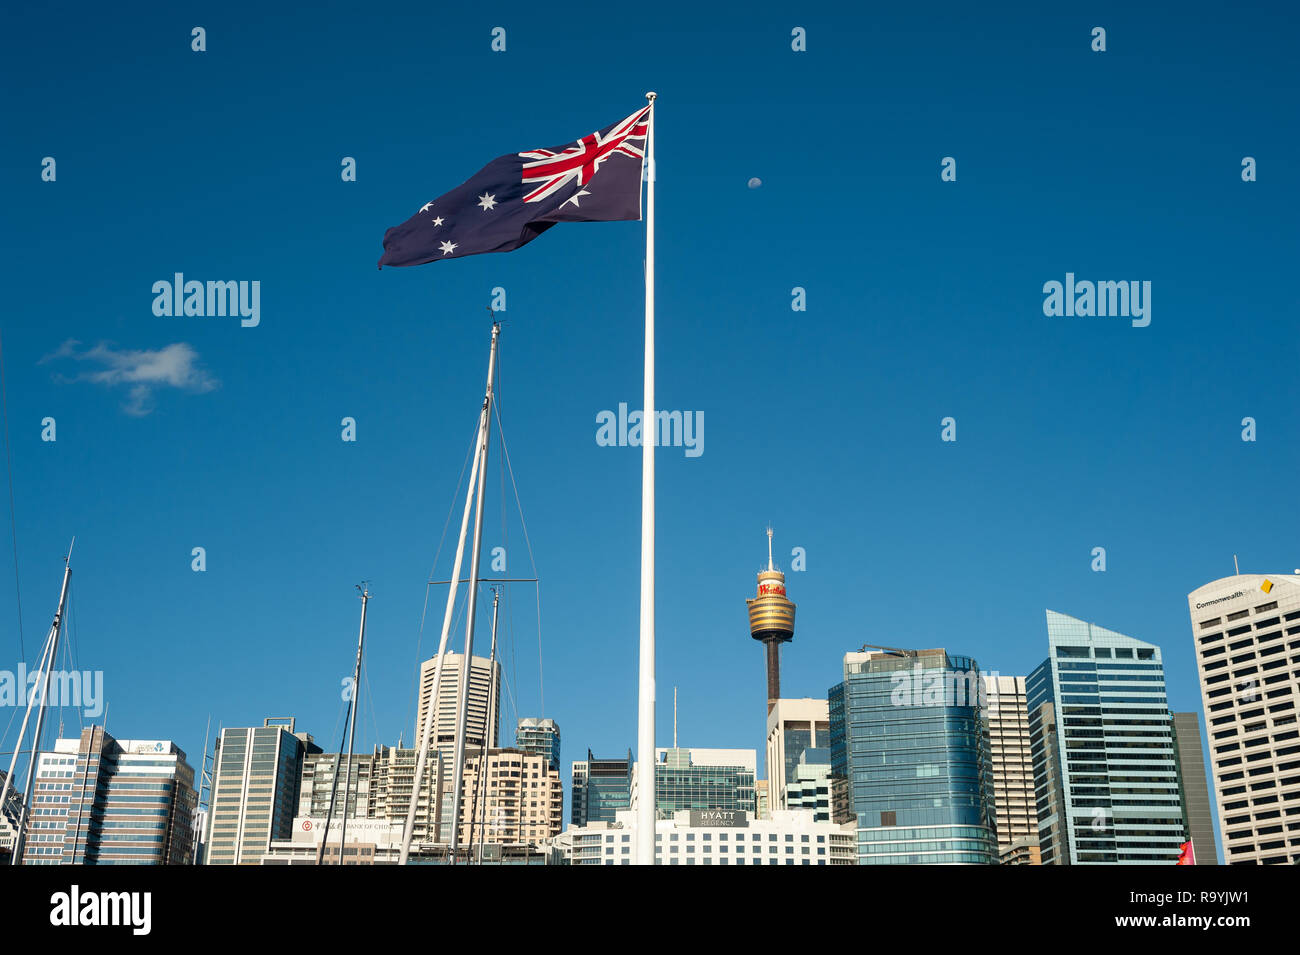 20.09.2018, Sydney, New South Wales, Australien - Eine riesige australische Flagge weht ueber dem Hafen von Darling Harbour mit der Skyline des Gescha Stock Photo